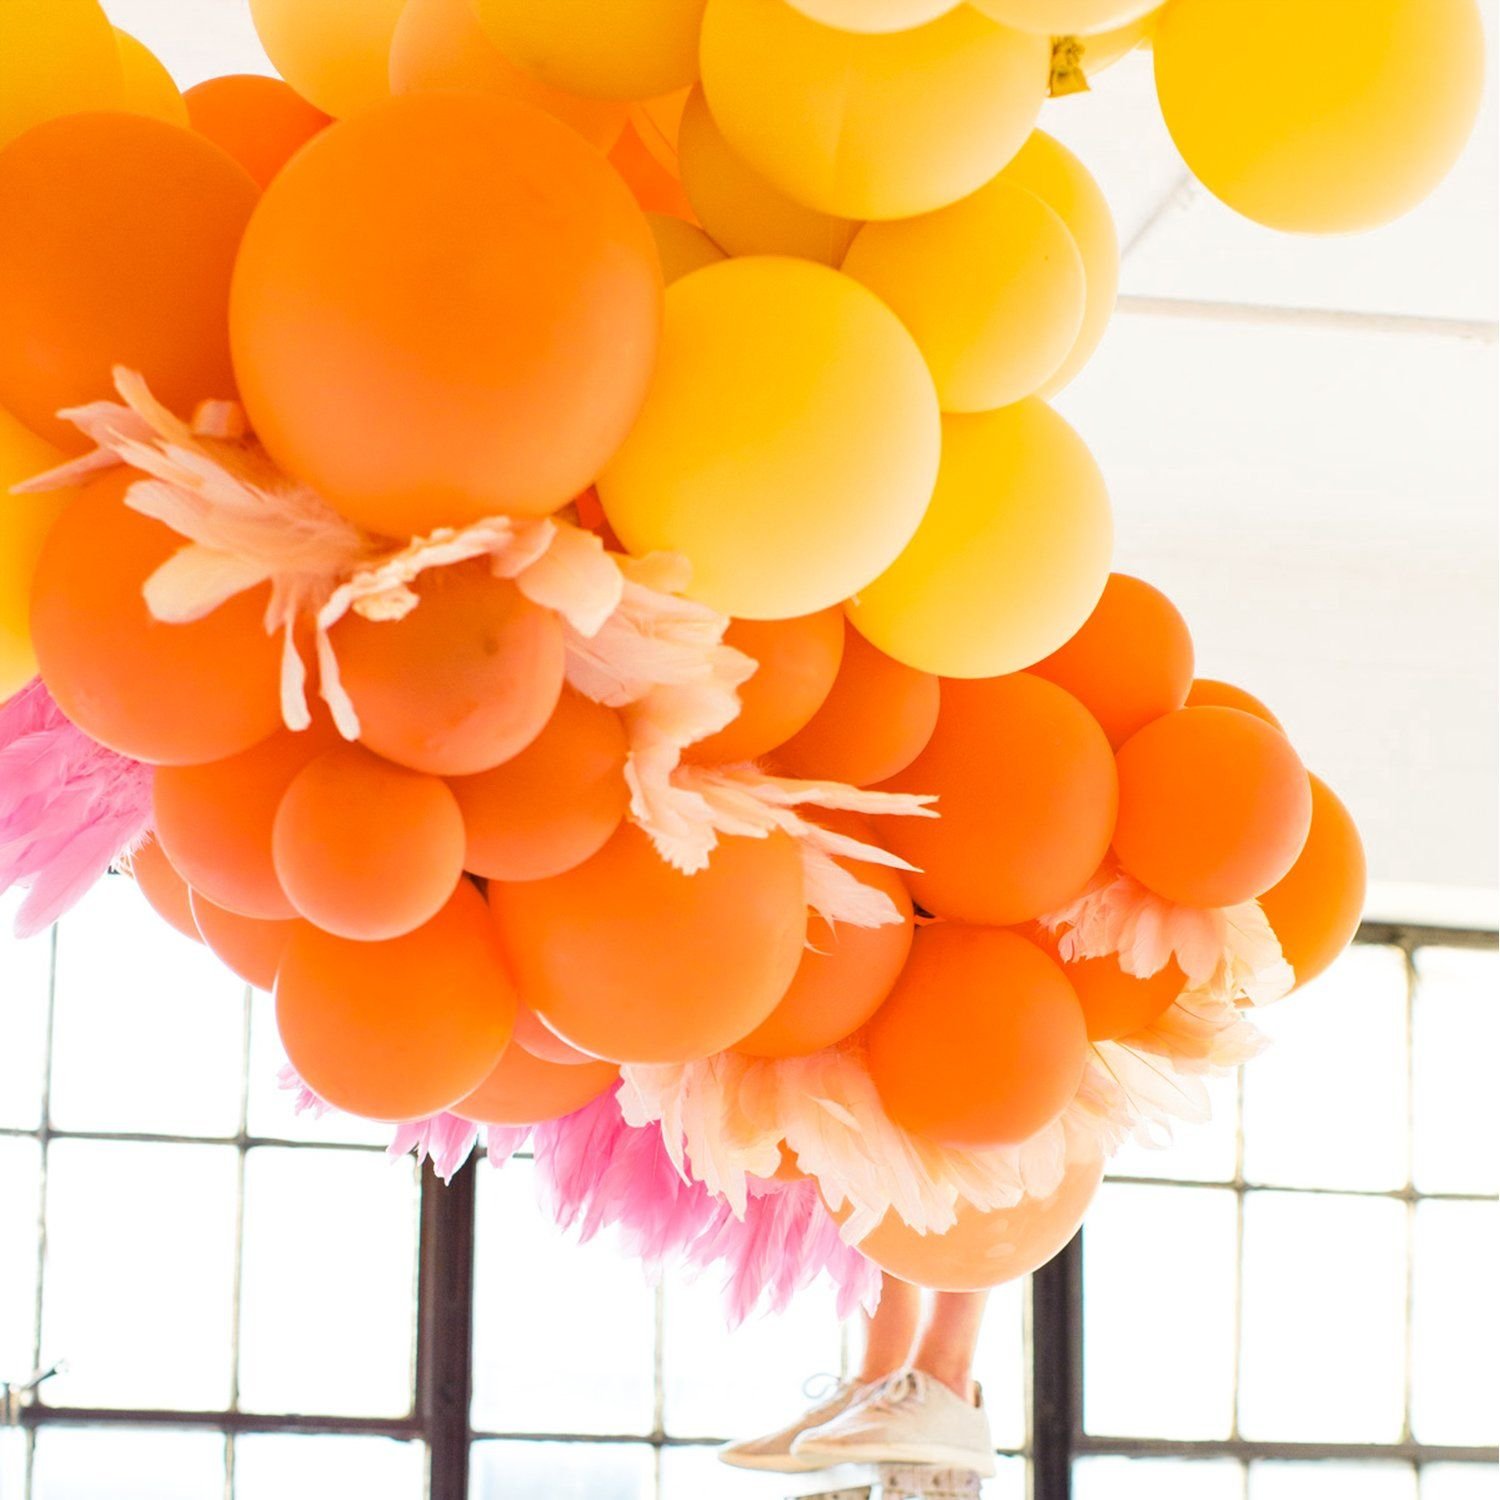 На оранжевом шаре. Оранжевые шары. Оранжевый воздушный шарик. Воздушные шары розовые с оранжевыми. Украшение оранжевыми шарами.